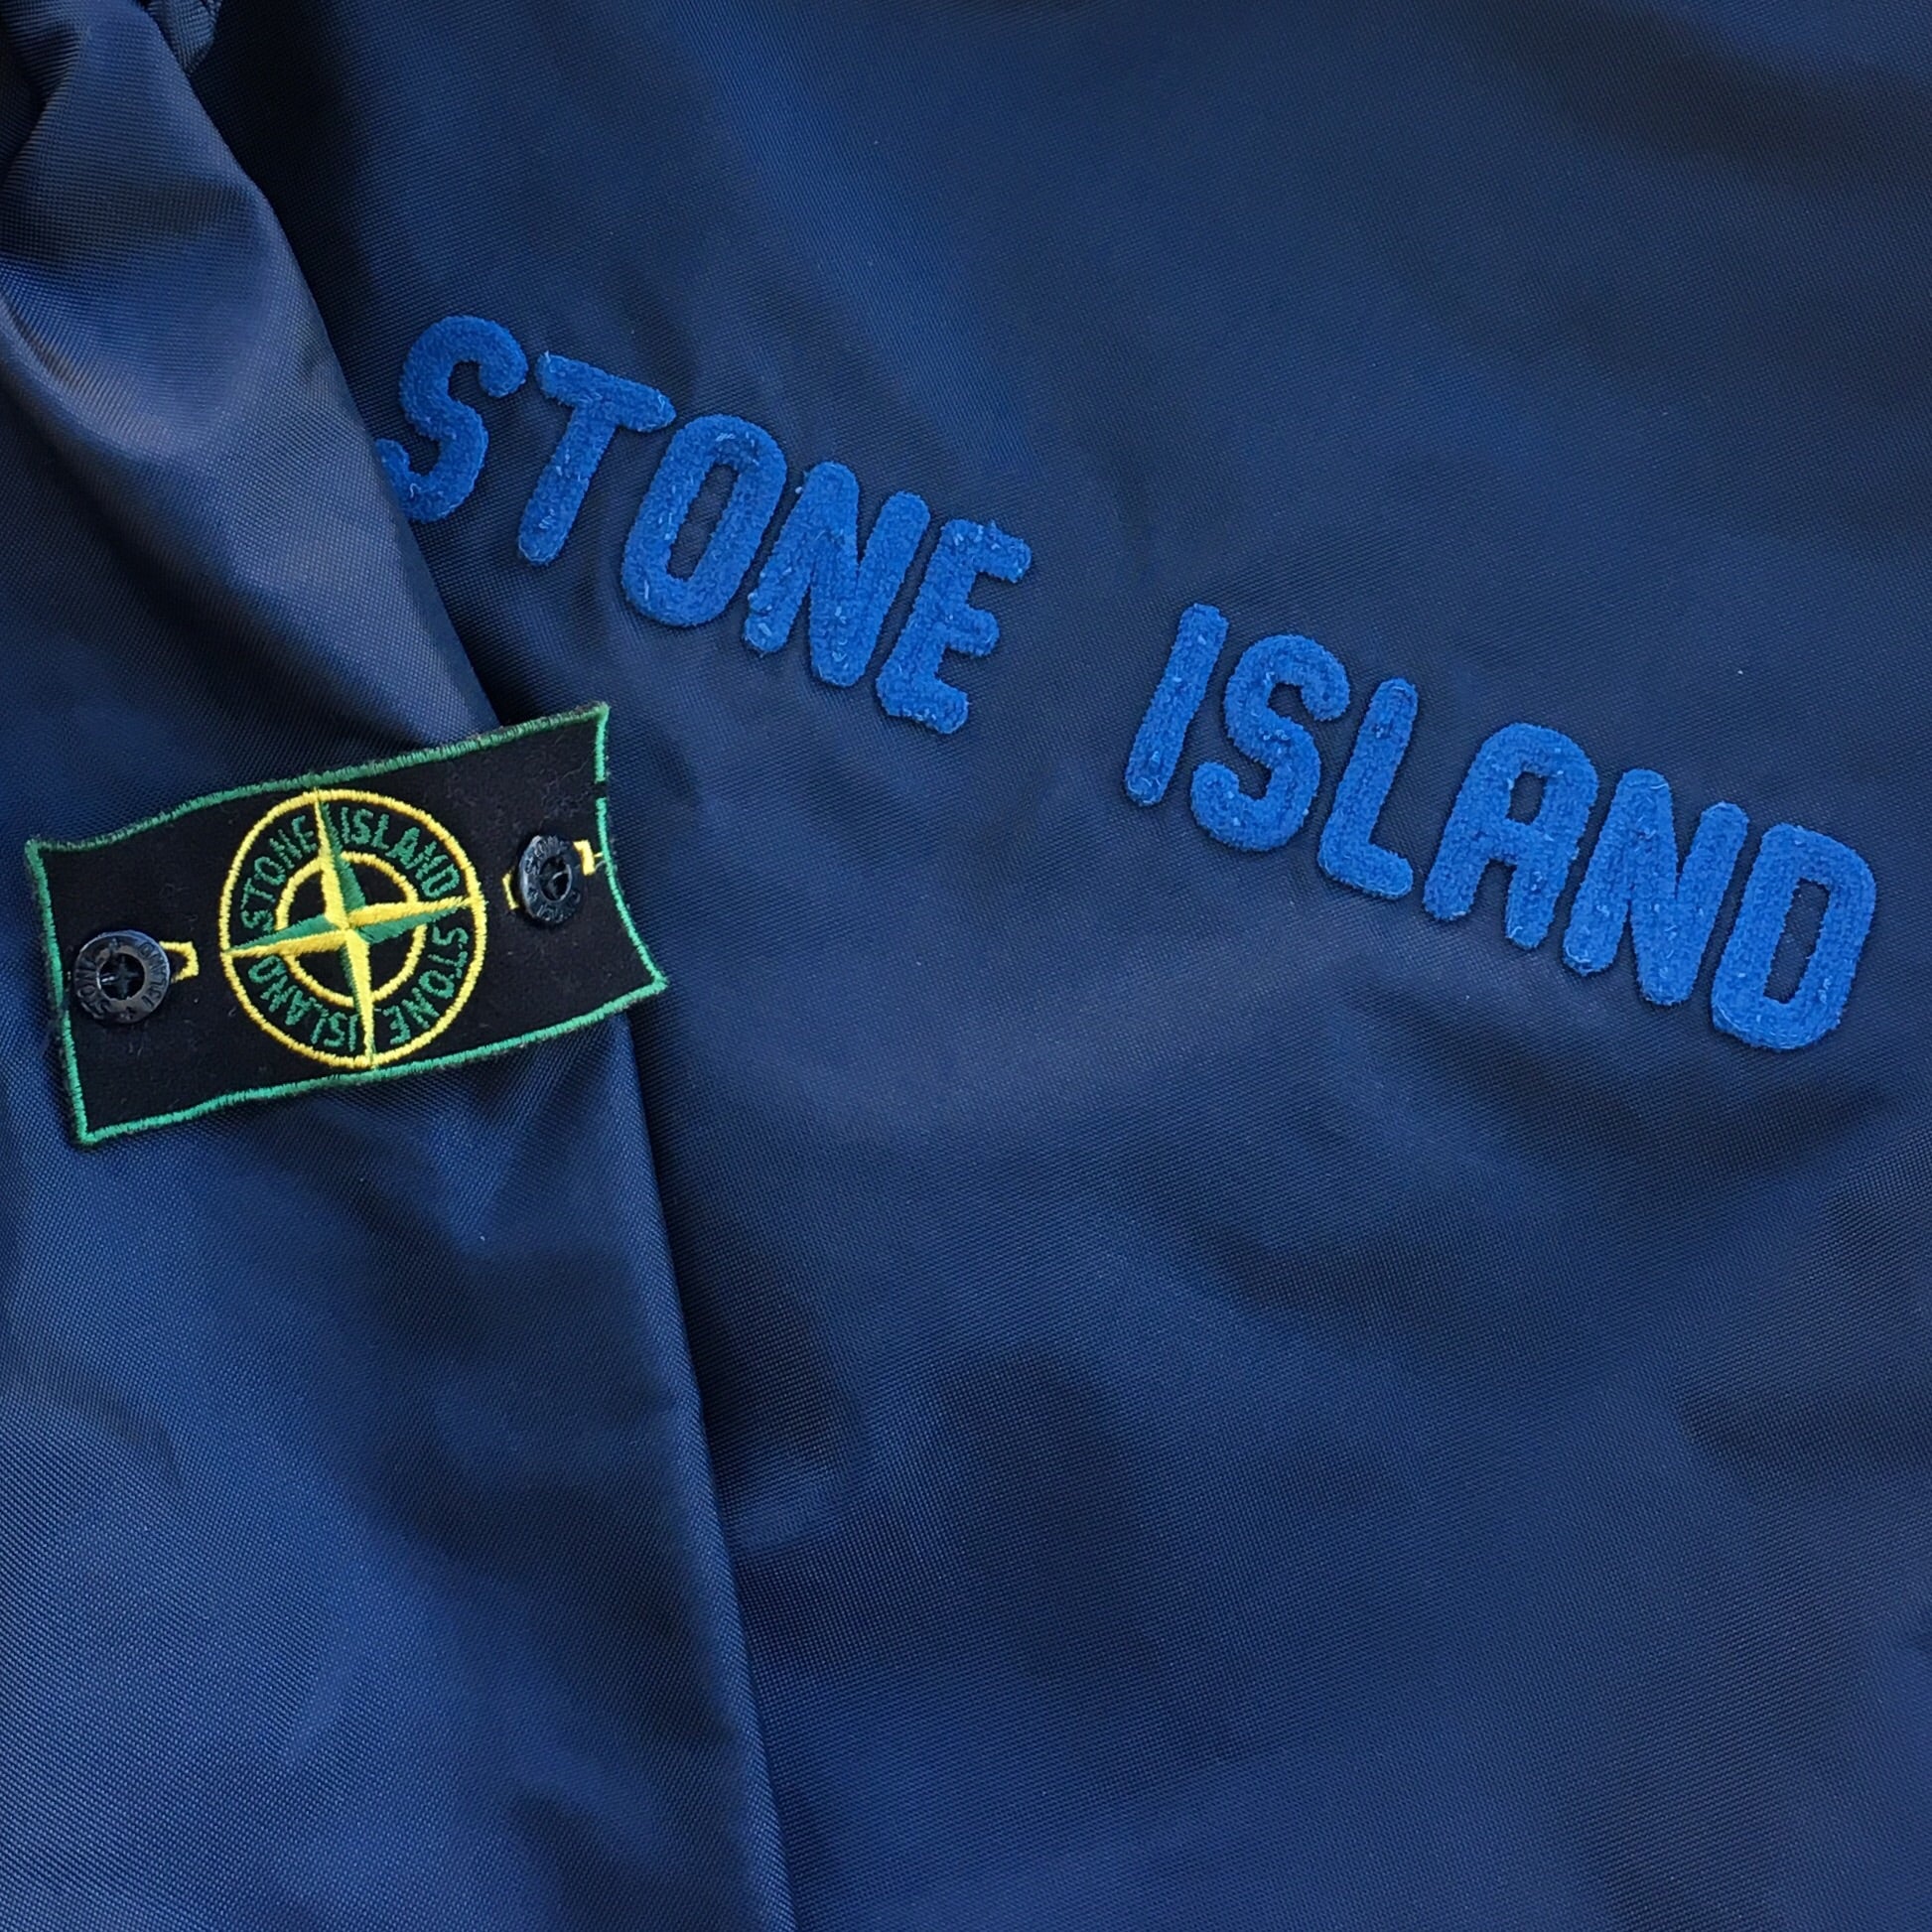 Stone Island SS 1994 Formula Steel Jacket designed by Massimo Osti